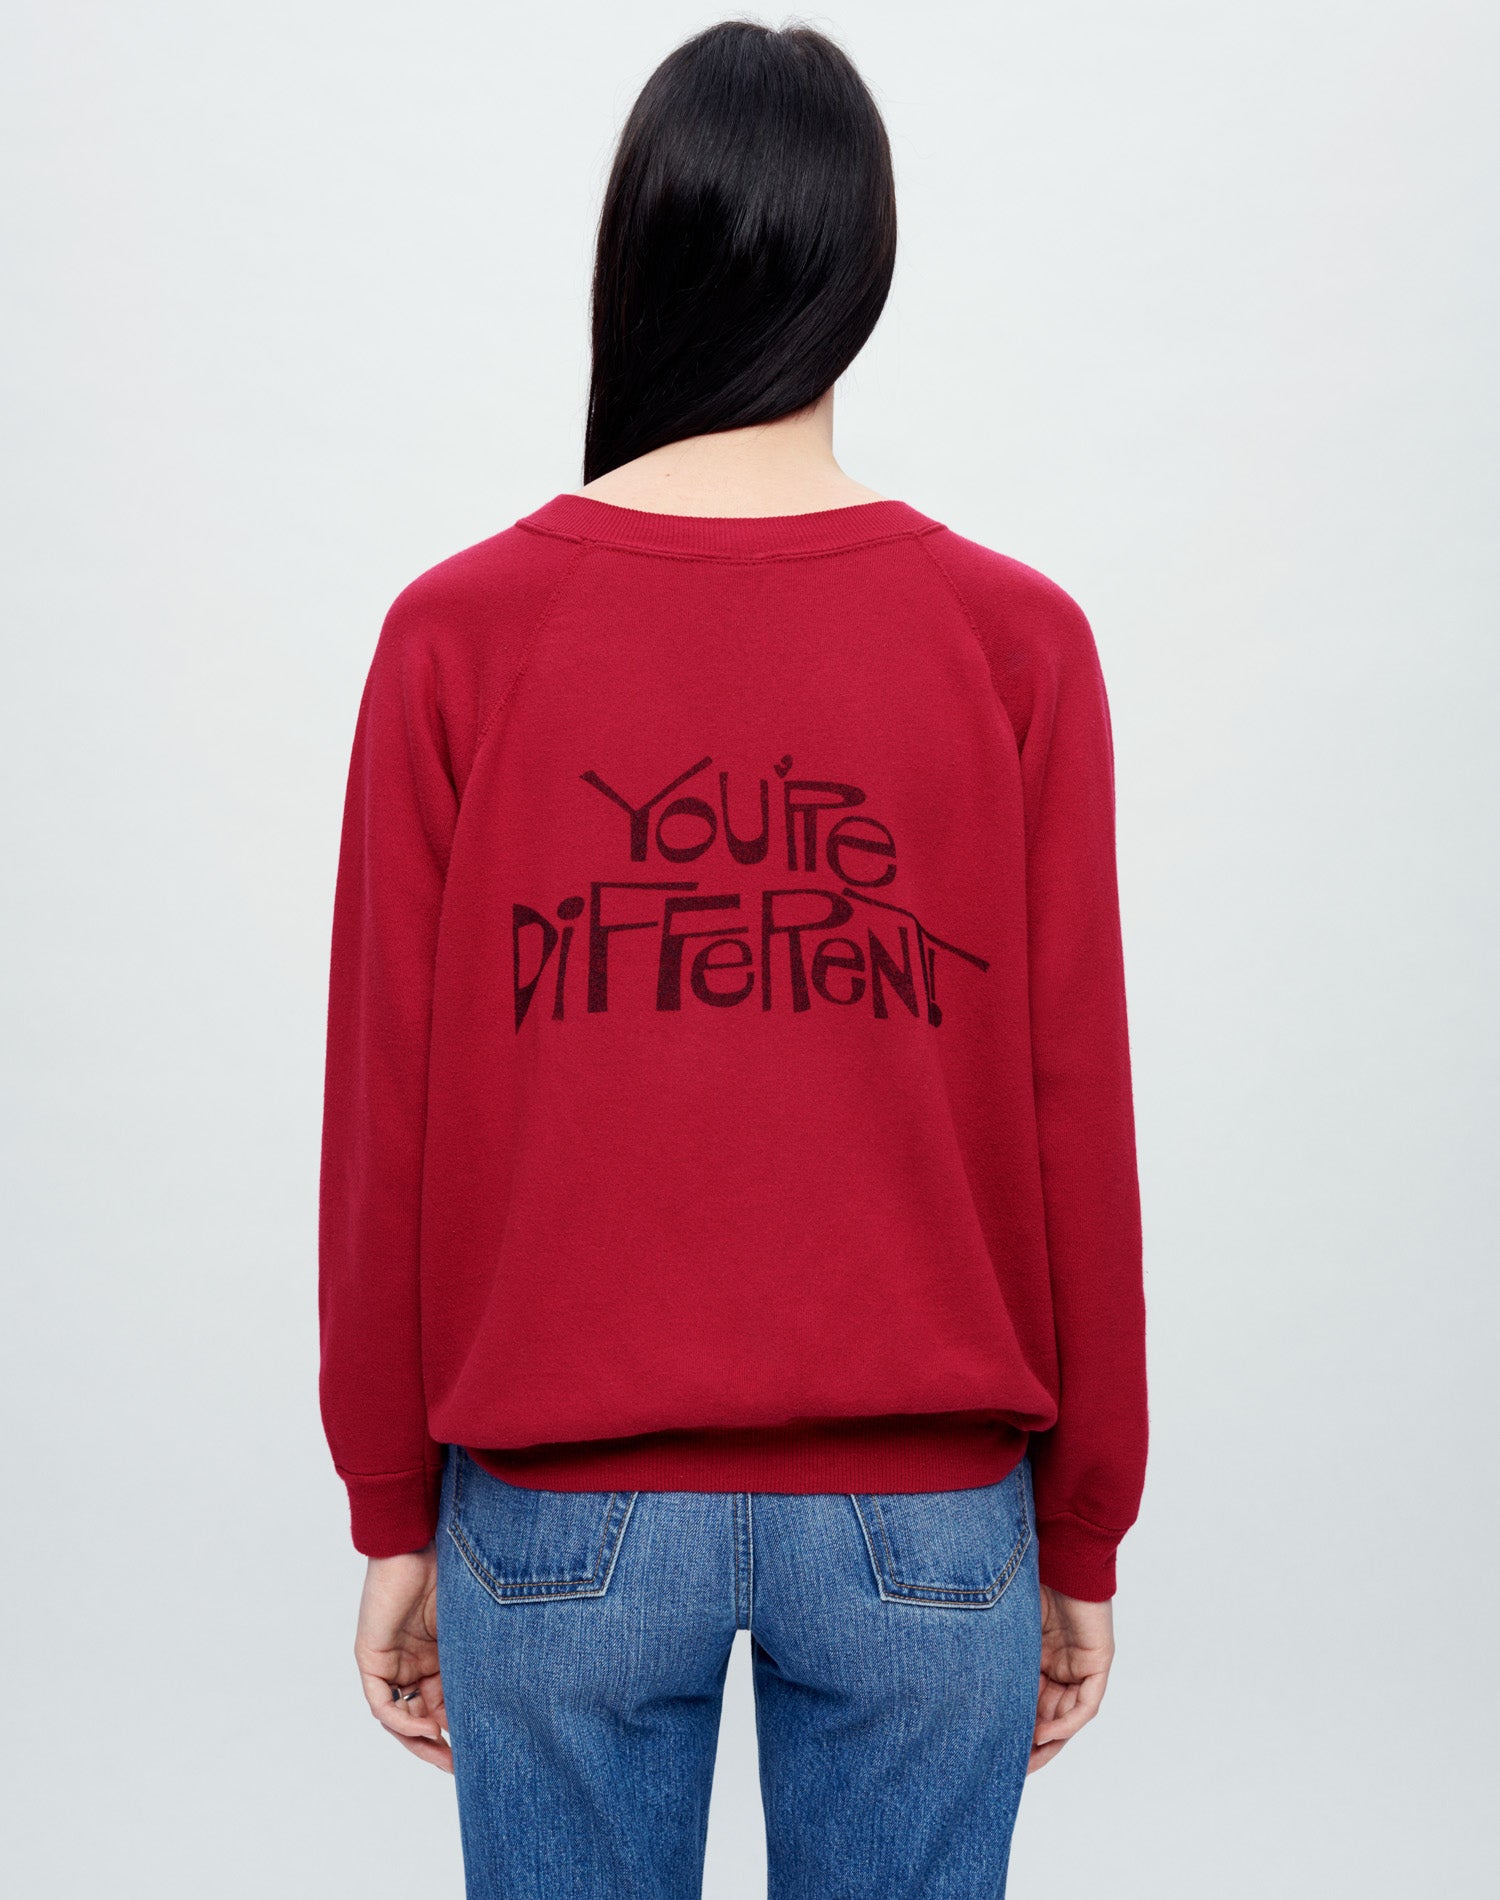 Upcycled Sweatshirt "I Like You" - Assorted